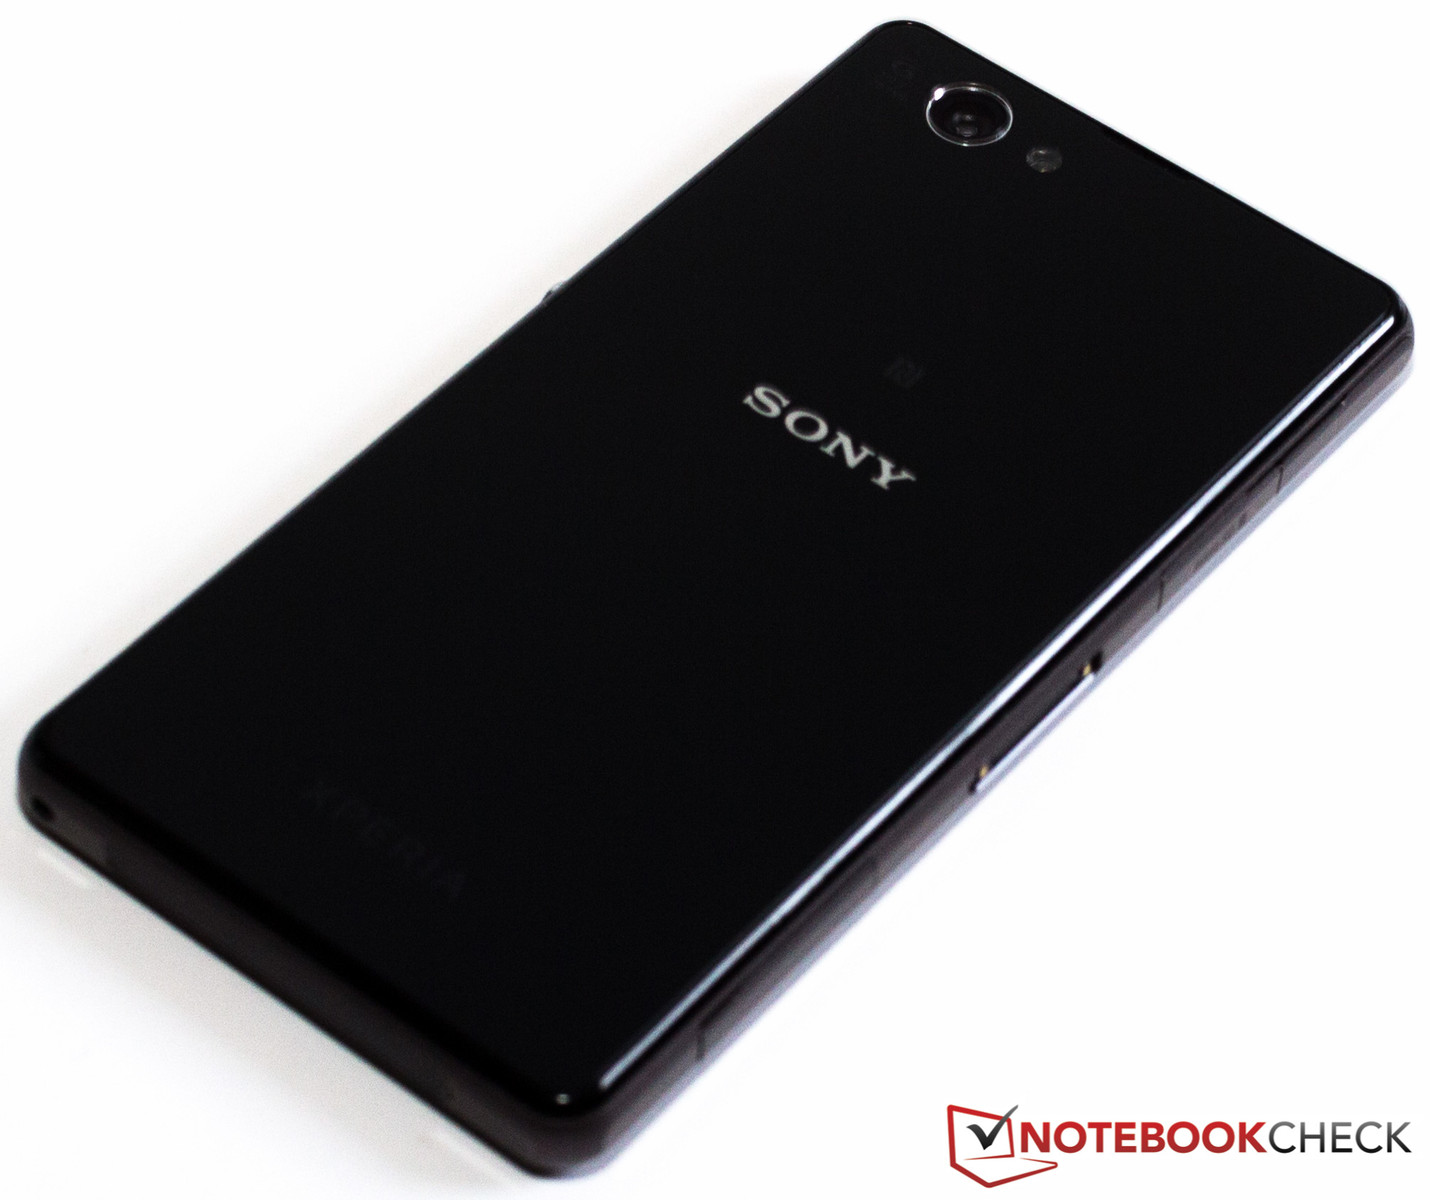 afgewerkt creatief Ongeautoriseerd Review Sony Xperia Z1 Compact Smartphone - NotebookCheck.net Reviews